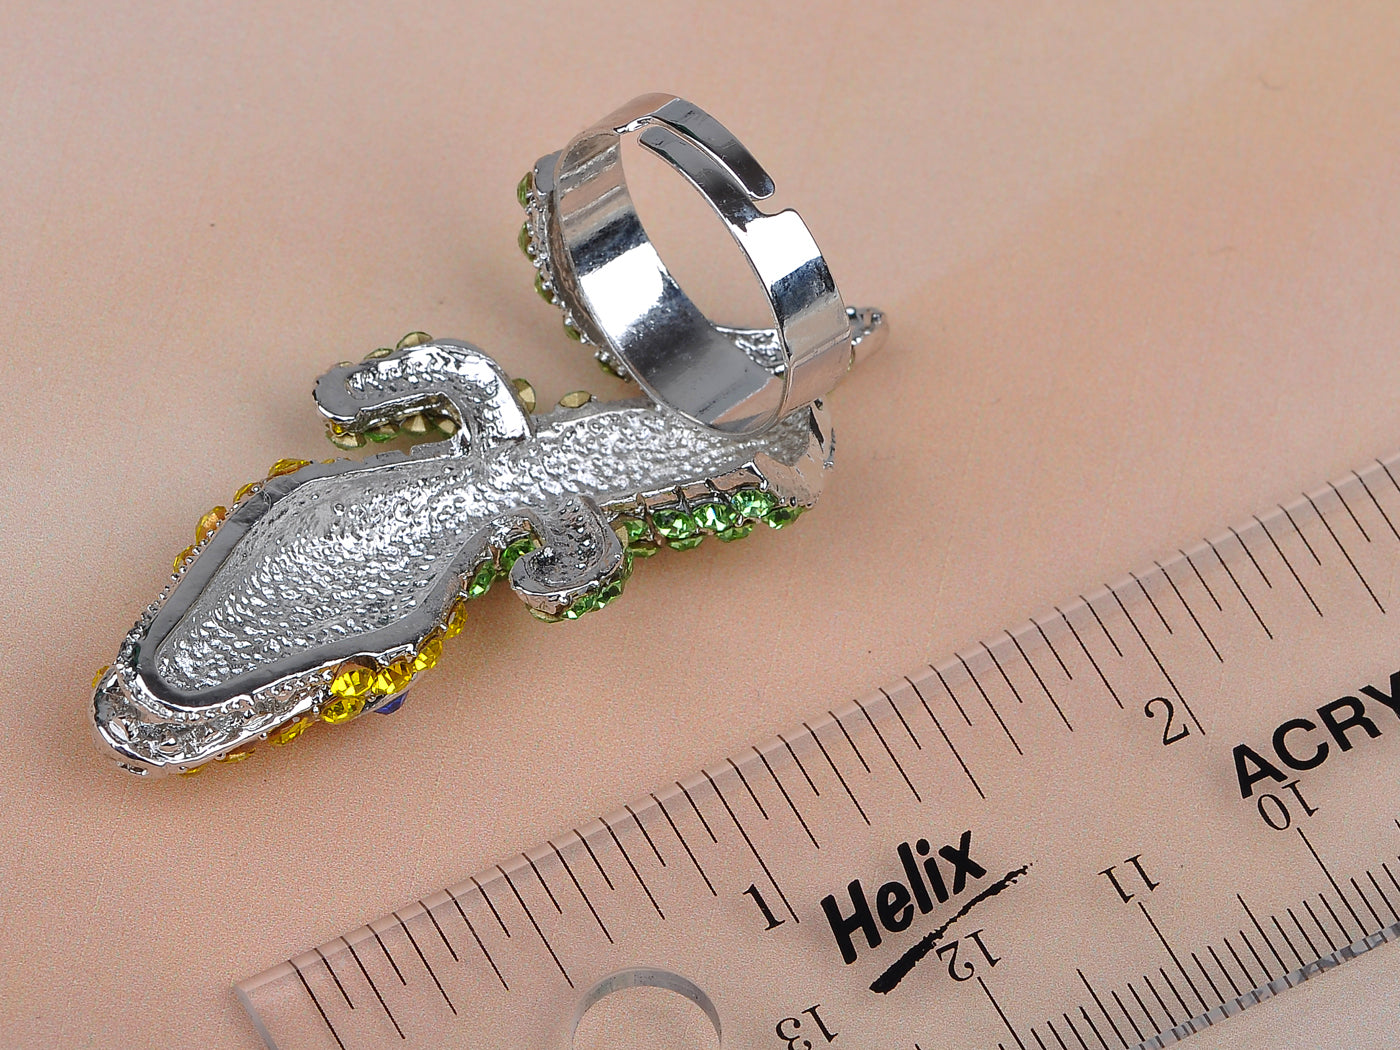 Green Peridot Yellow Big Head Alligator Reptile Jewelry Ring